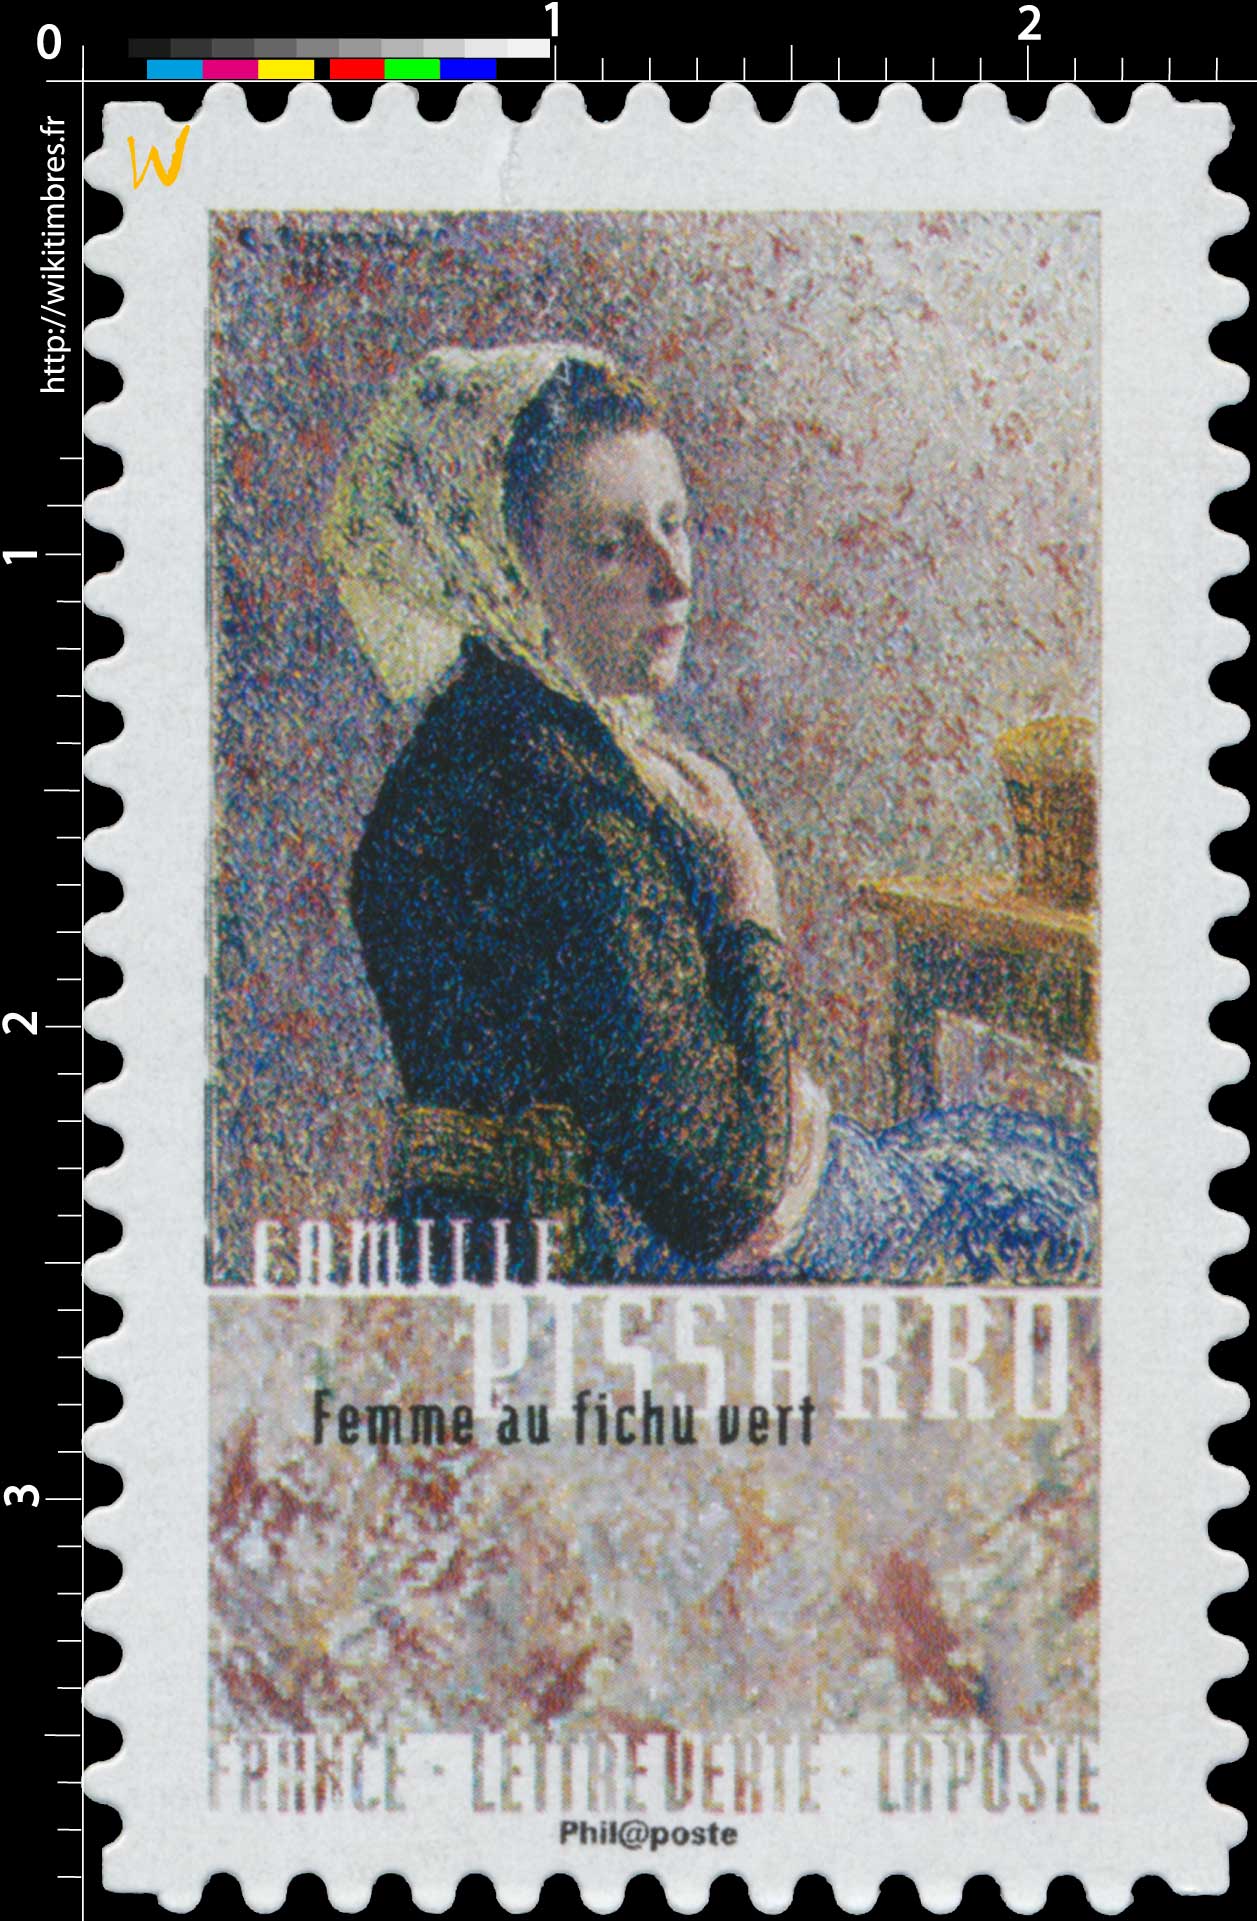 2016 Camille Pissarro - Femme au fichu vert